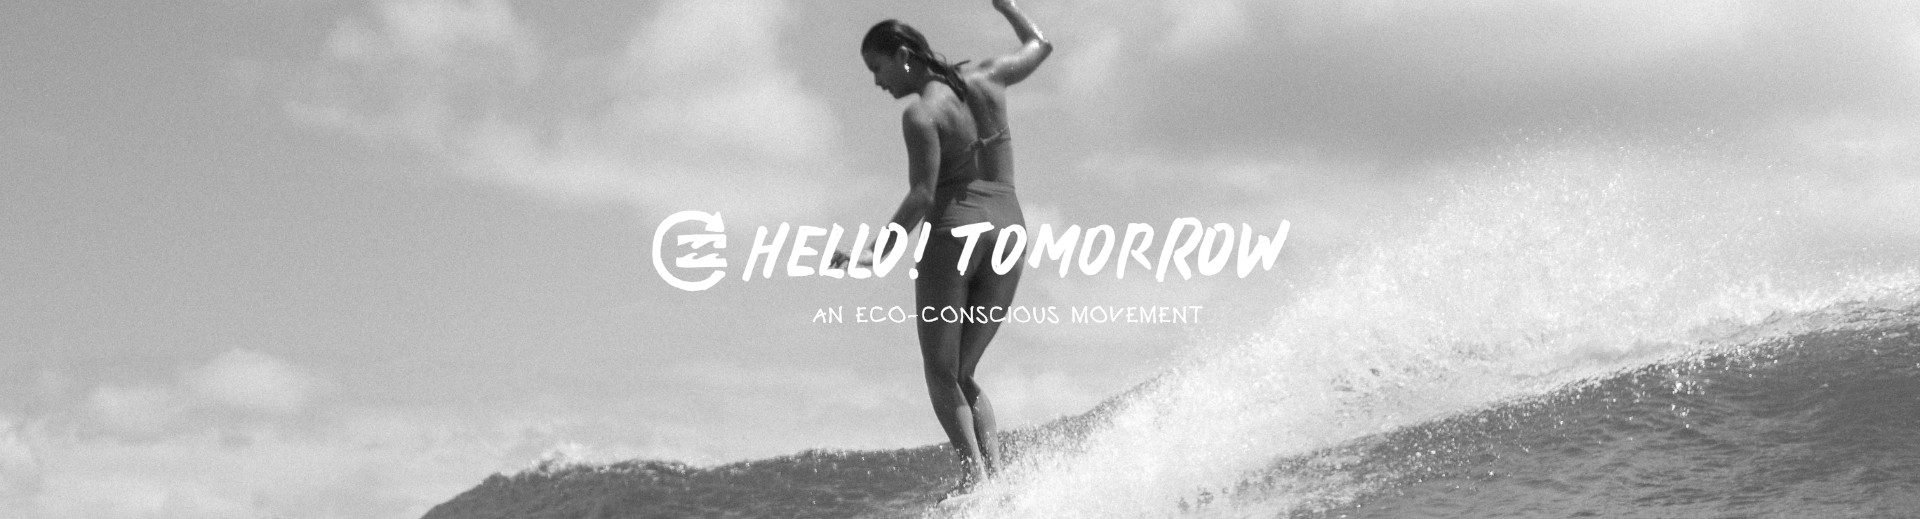 Hello! Tomorrow
An Eco-Conscious Movement